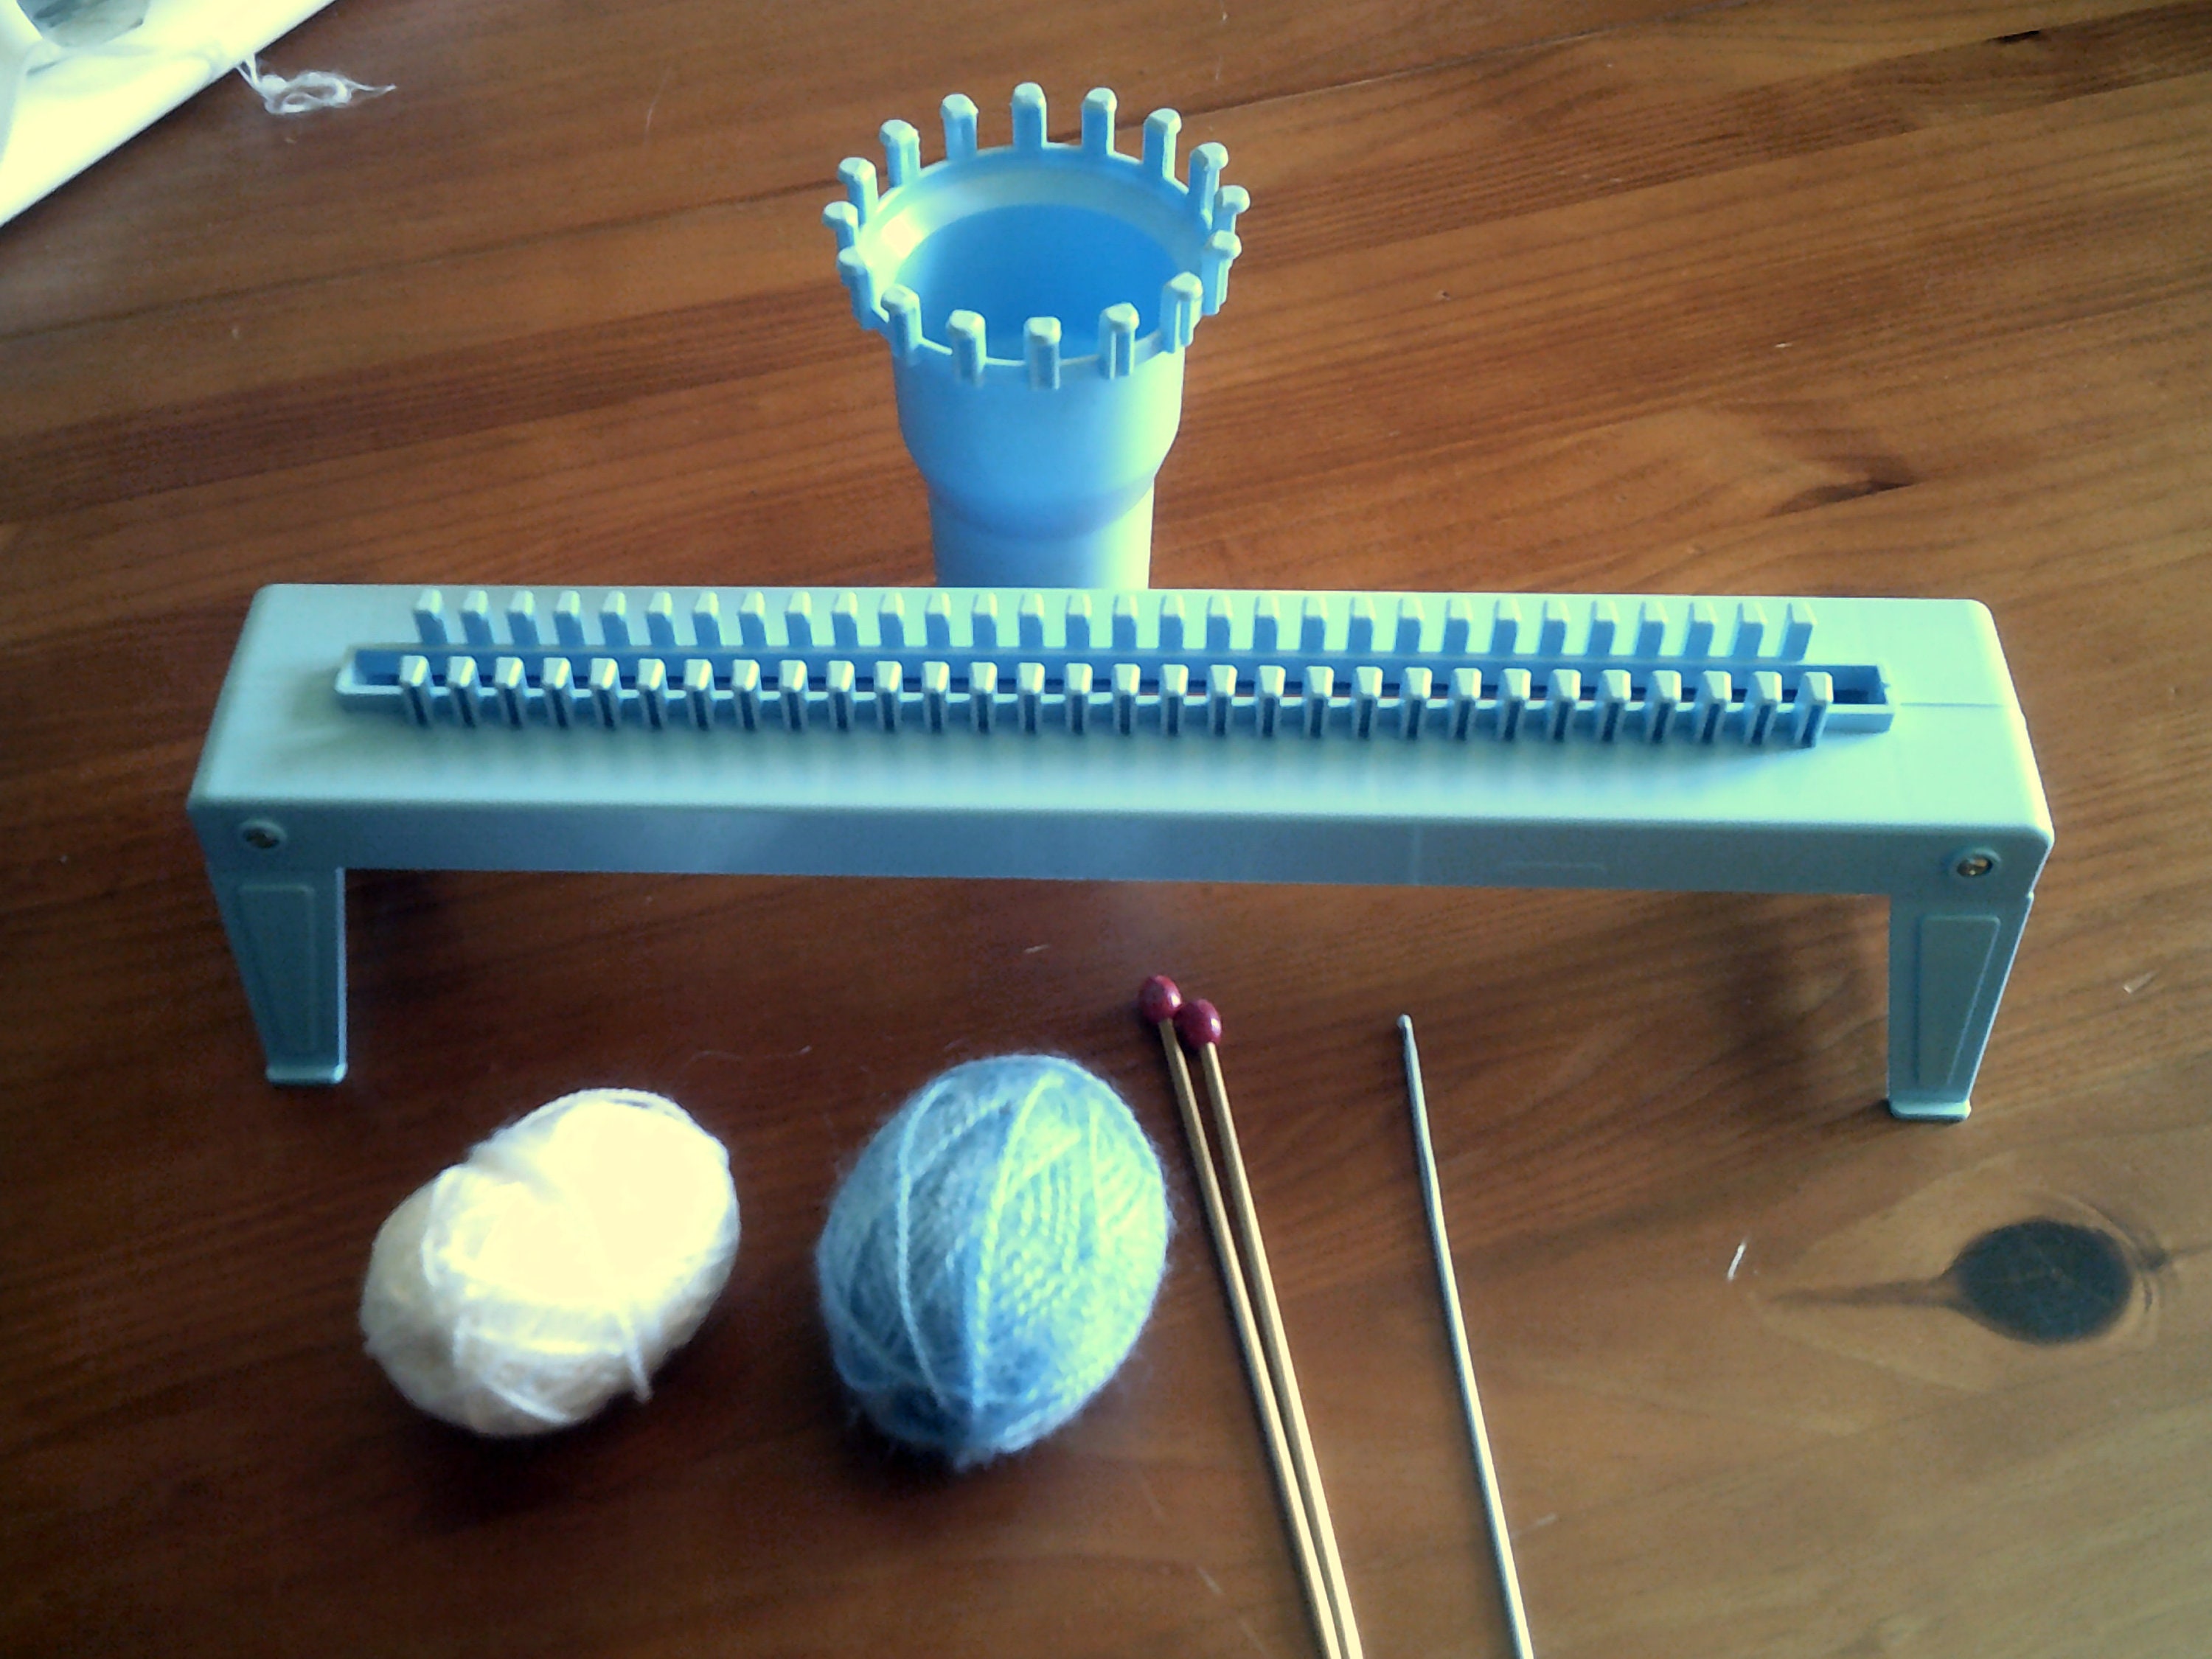 Sentro Knitting Machine Tensioner Knitting Machine Crank Handle